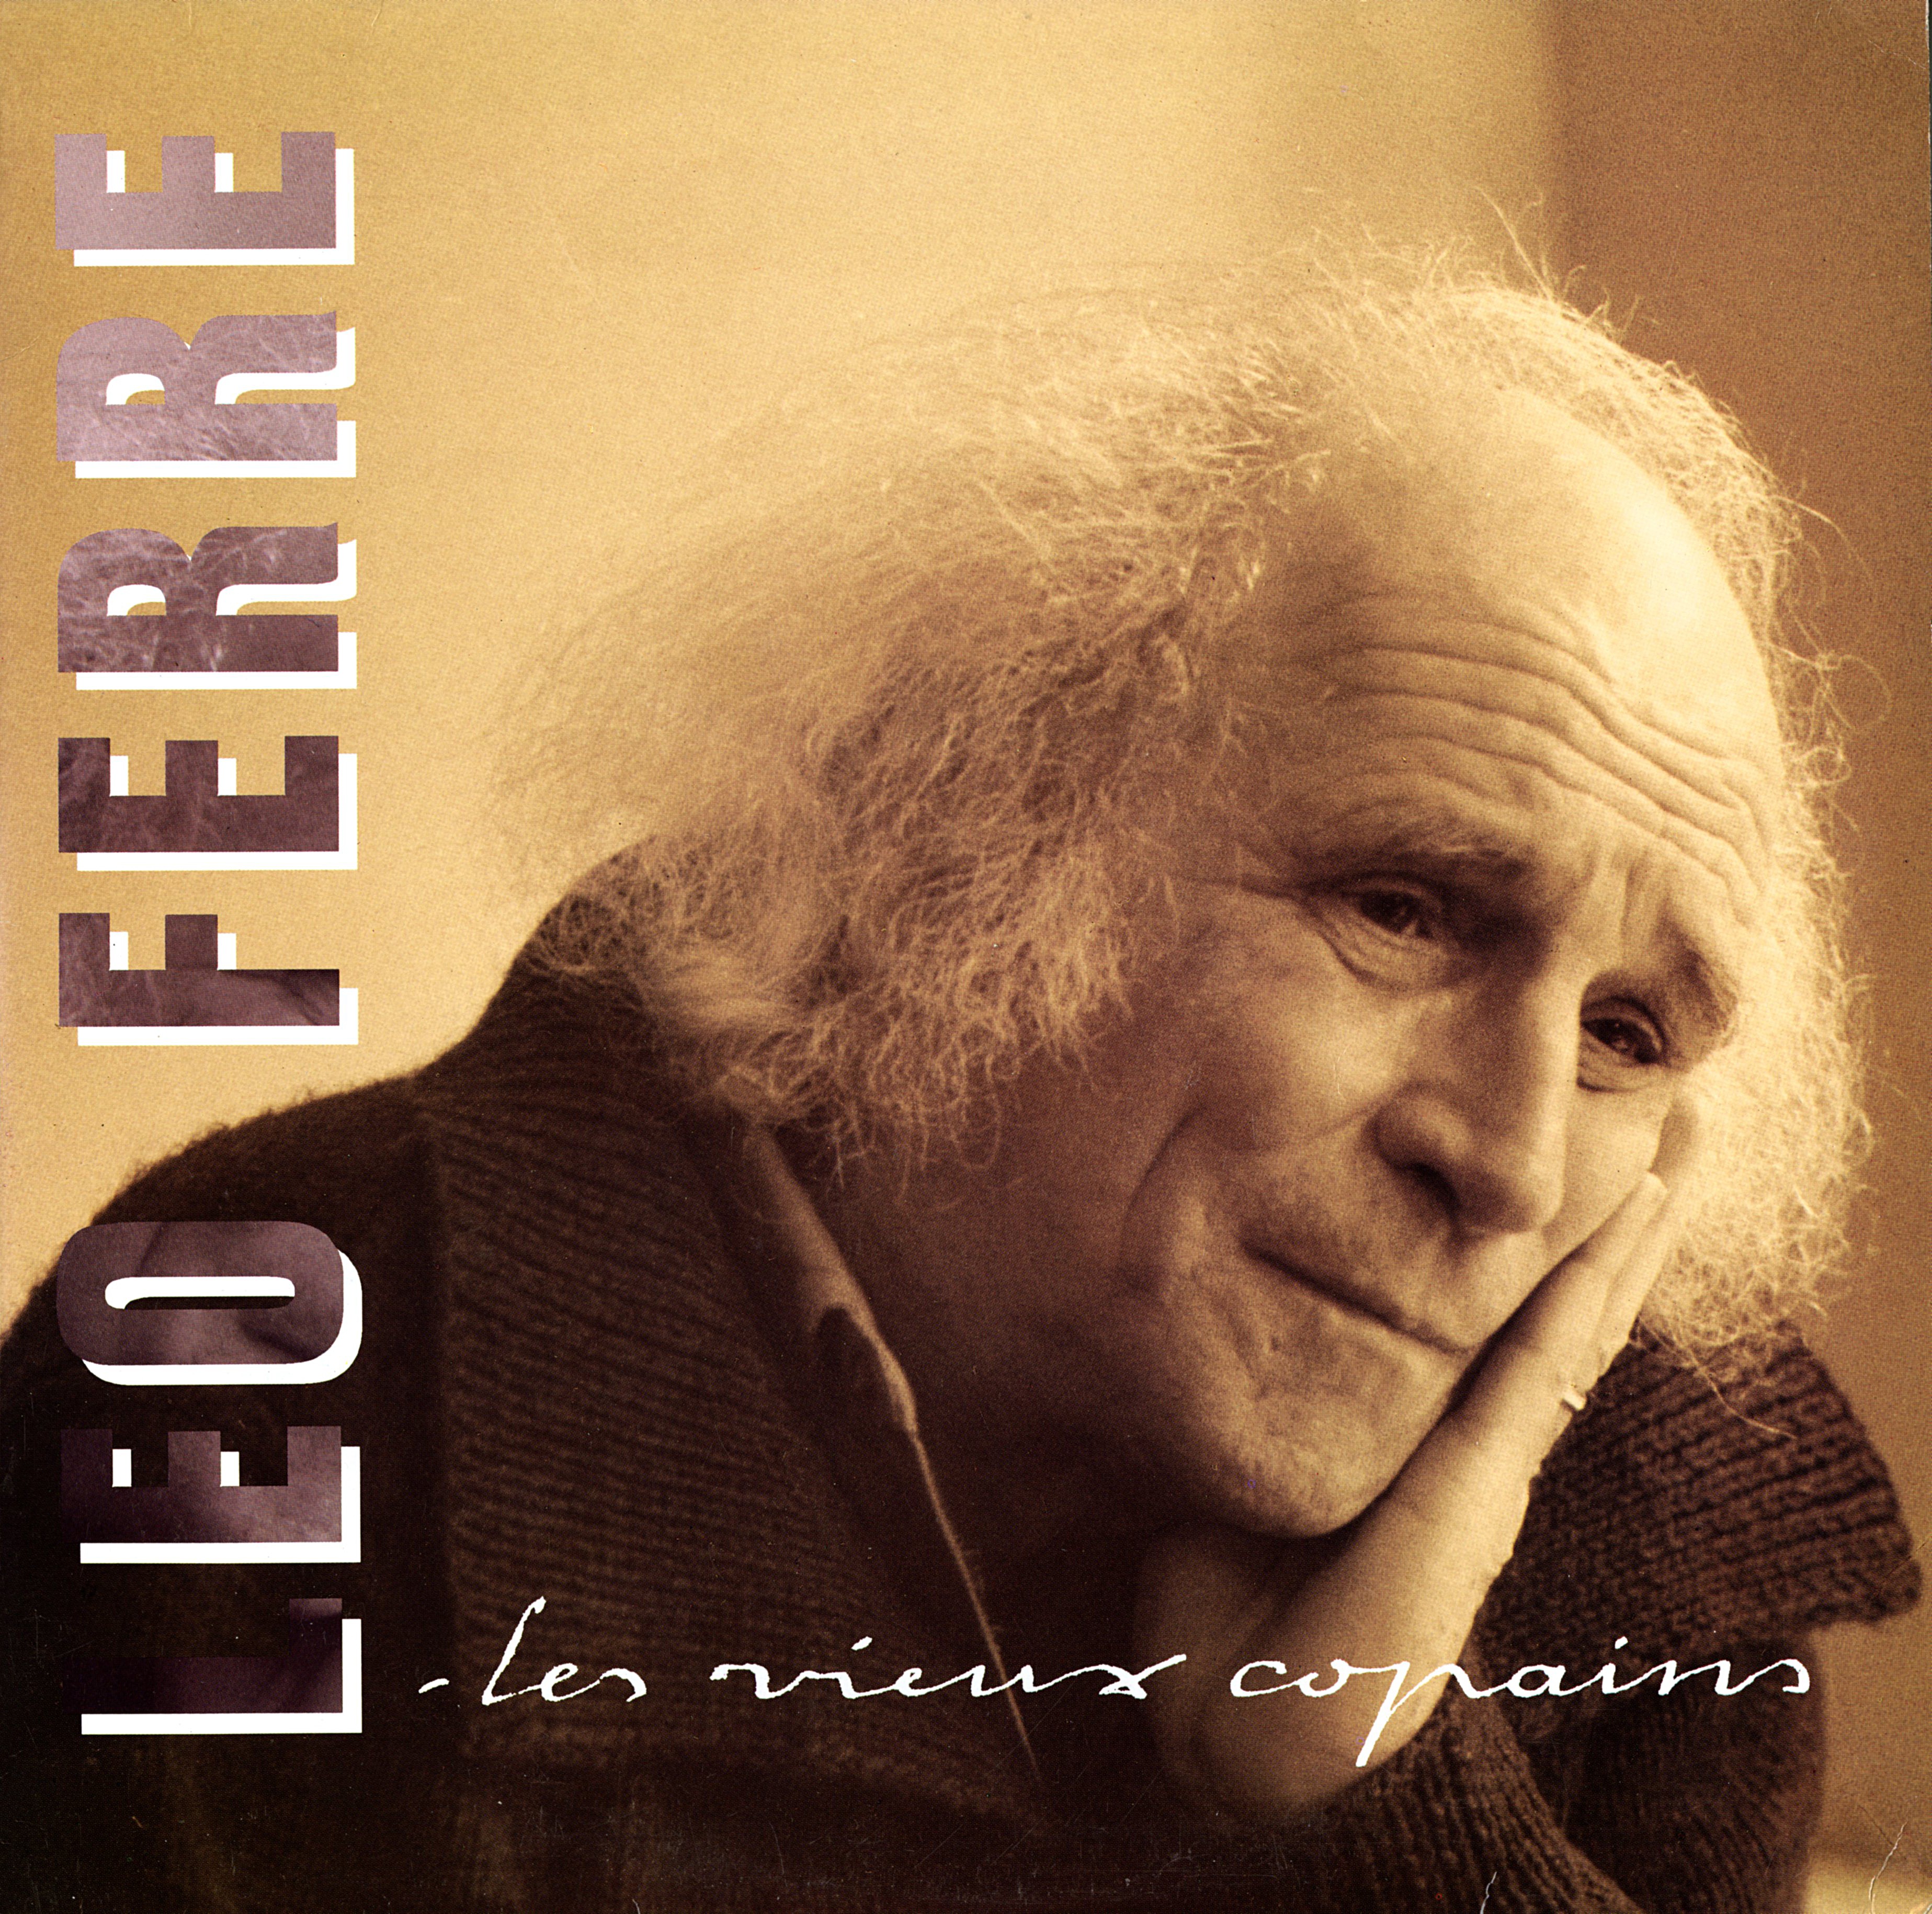 Léo Ferré - Album Les vieux copains